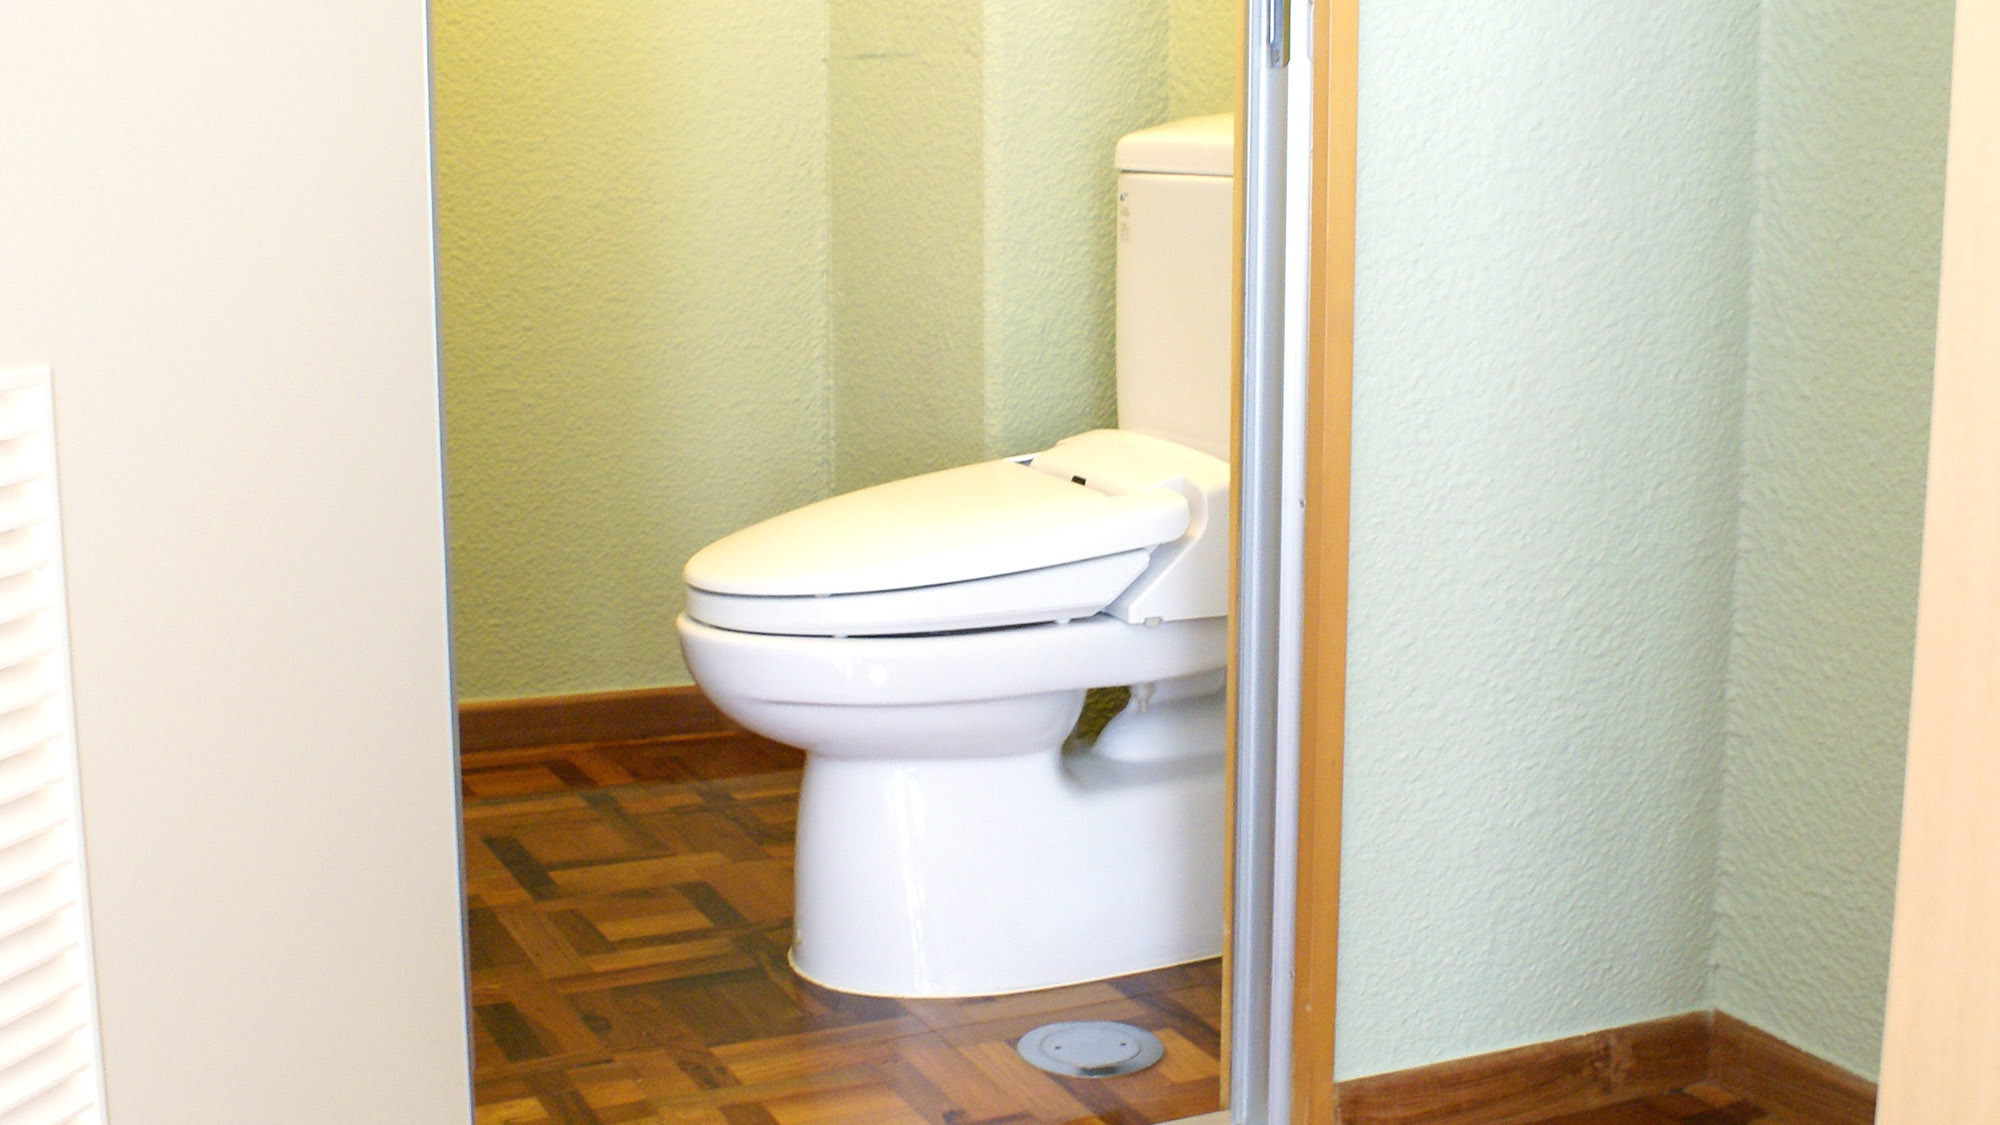 ・トイレトリプル・フォースルームはバスルームから独立していて便利です